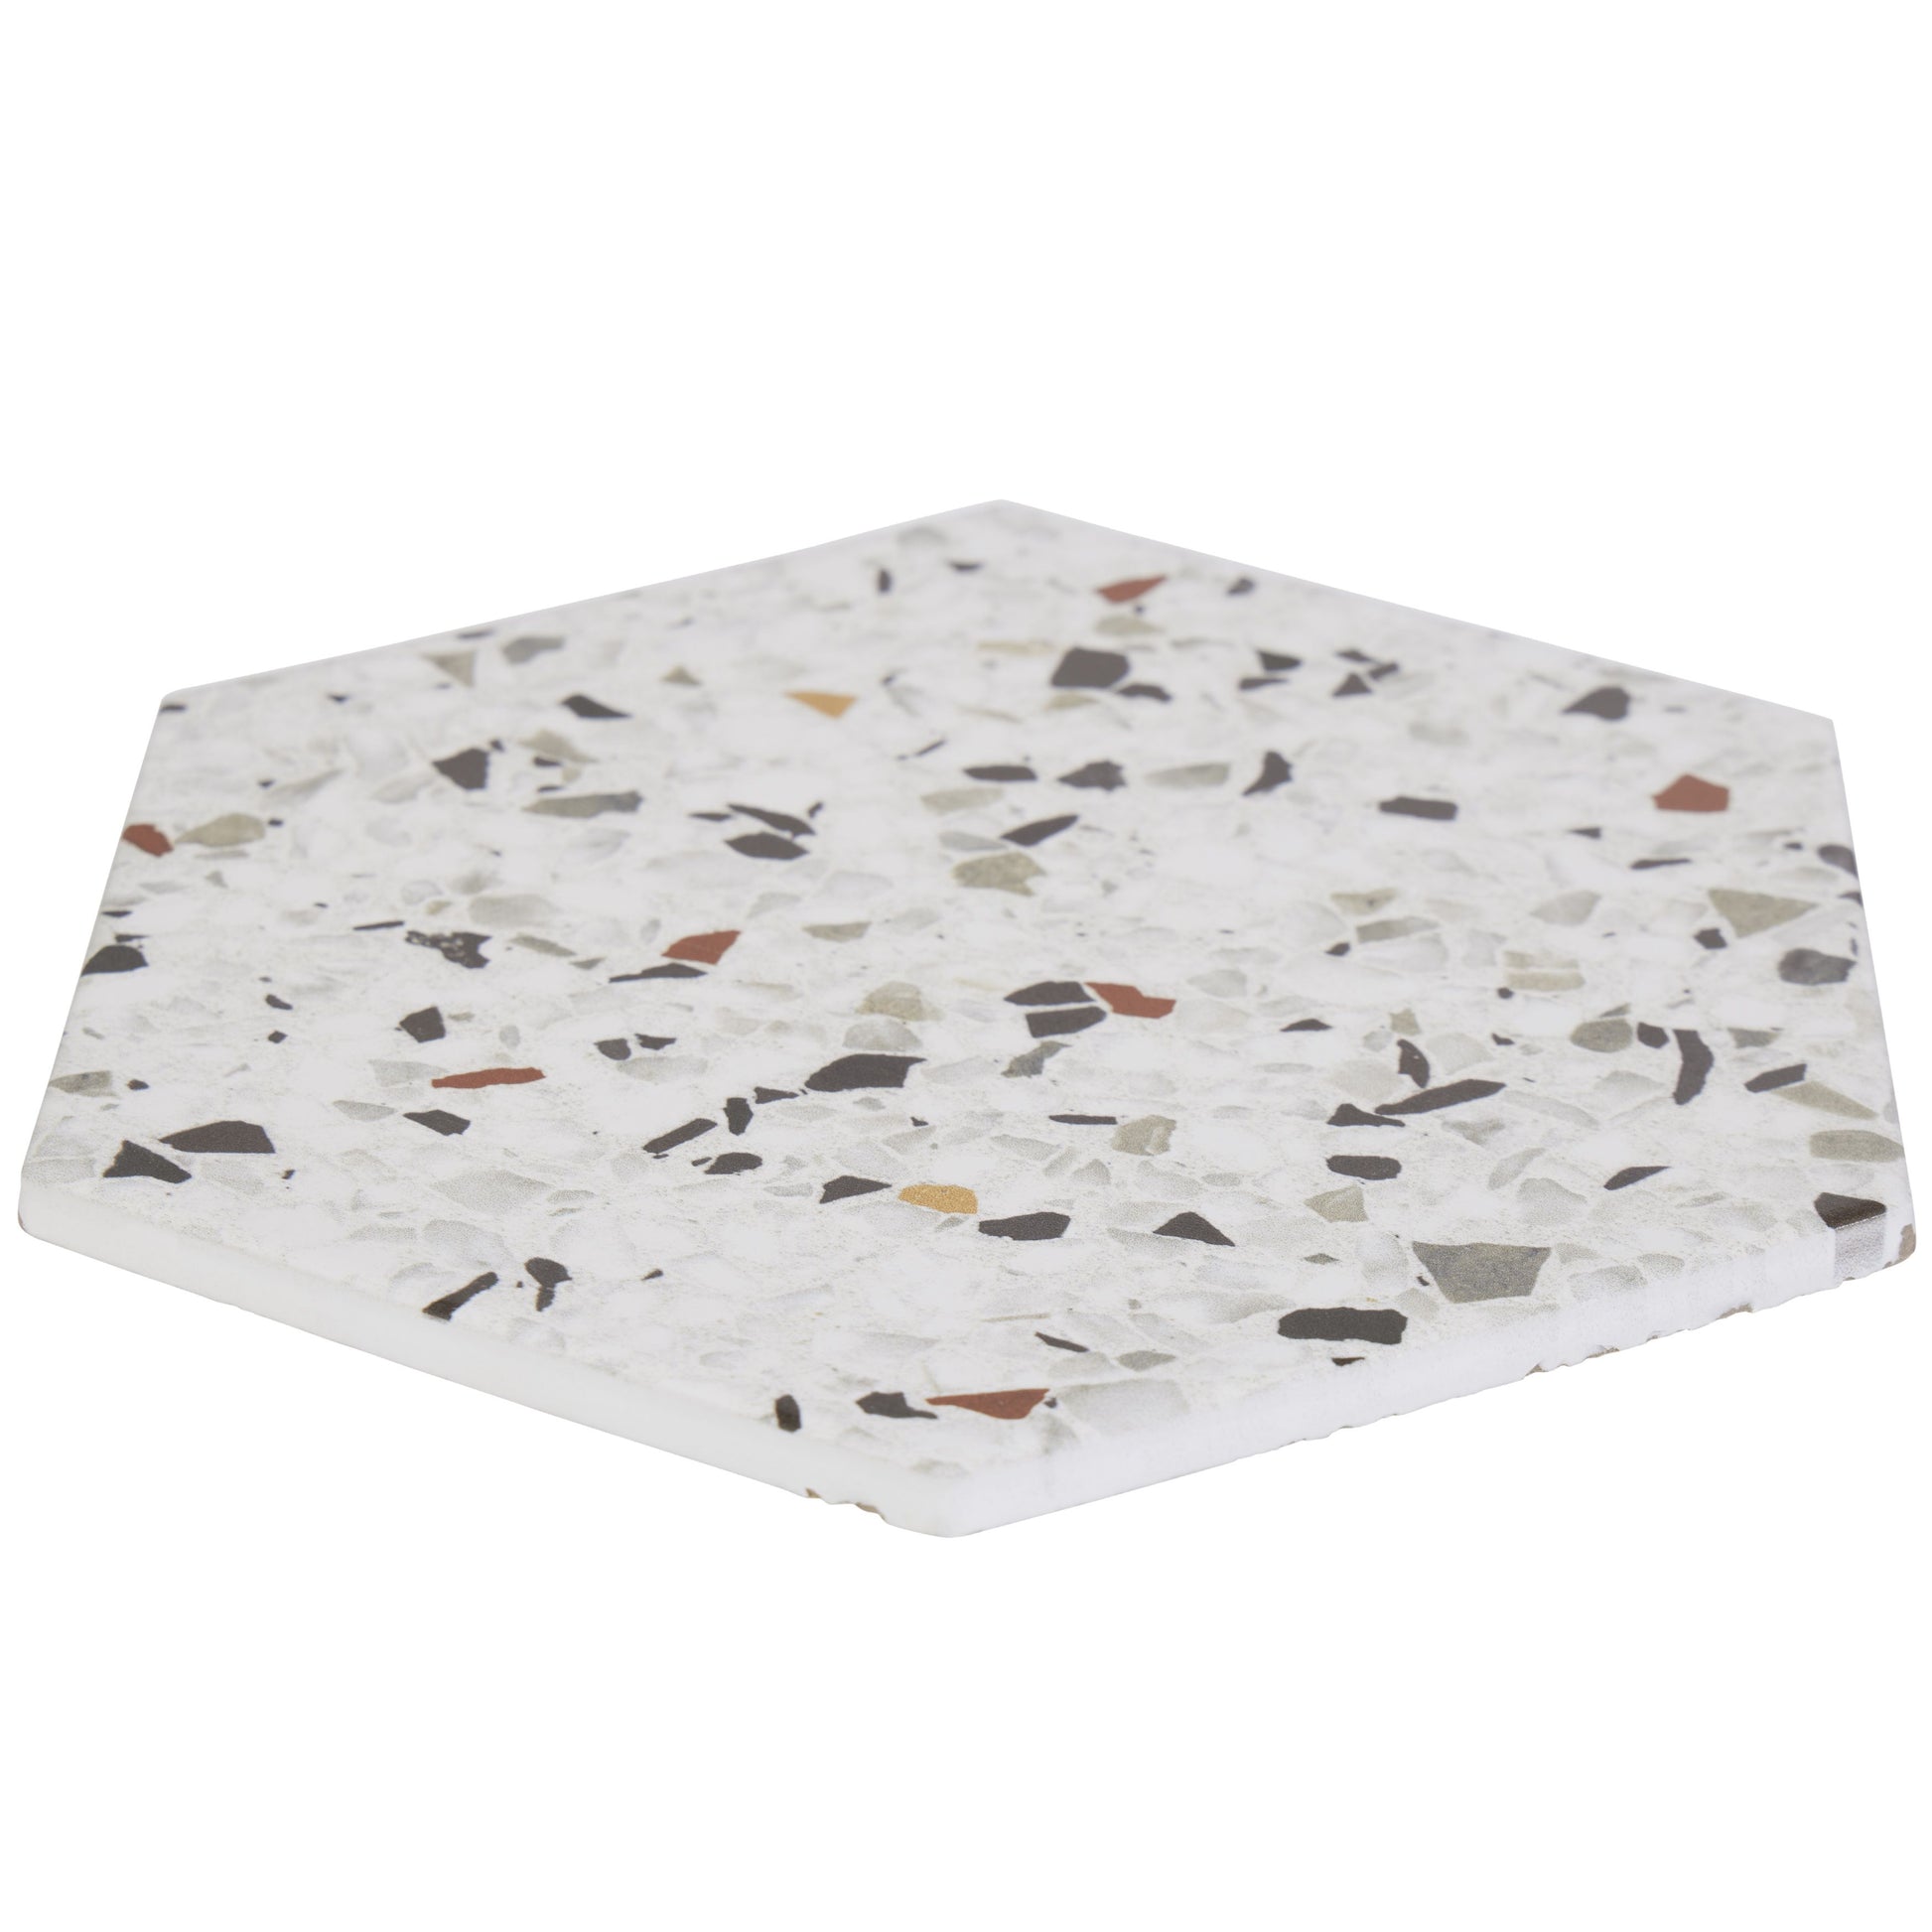 8x10 Hexagon Spark Mix porcelain tile - Industry Tile